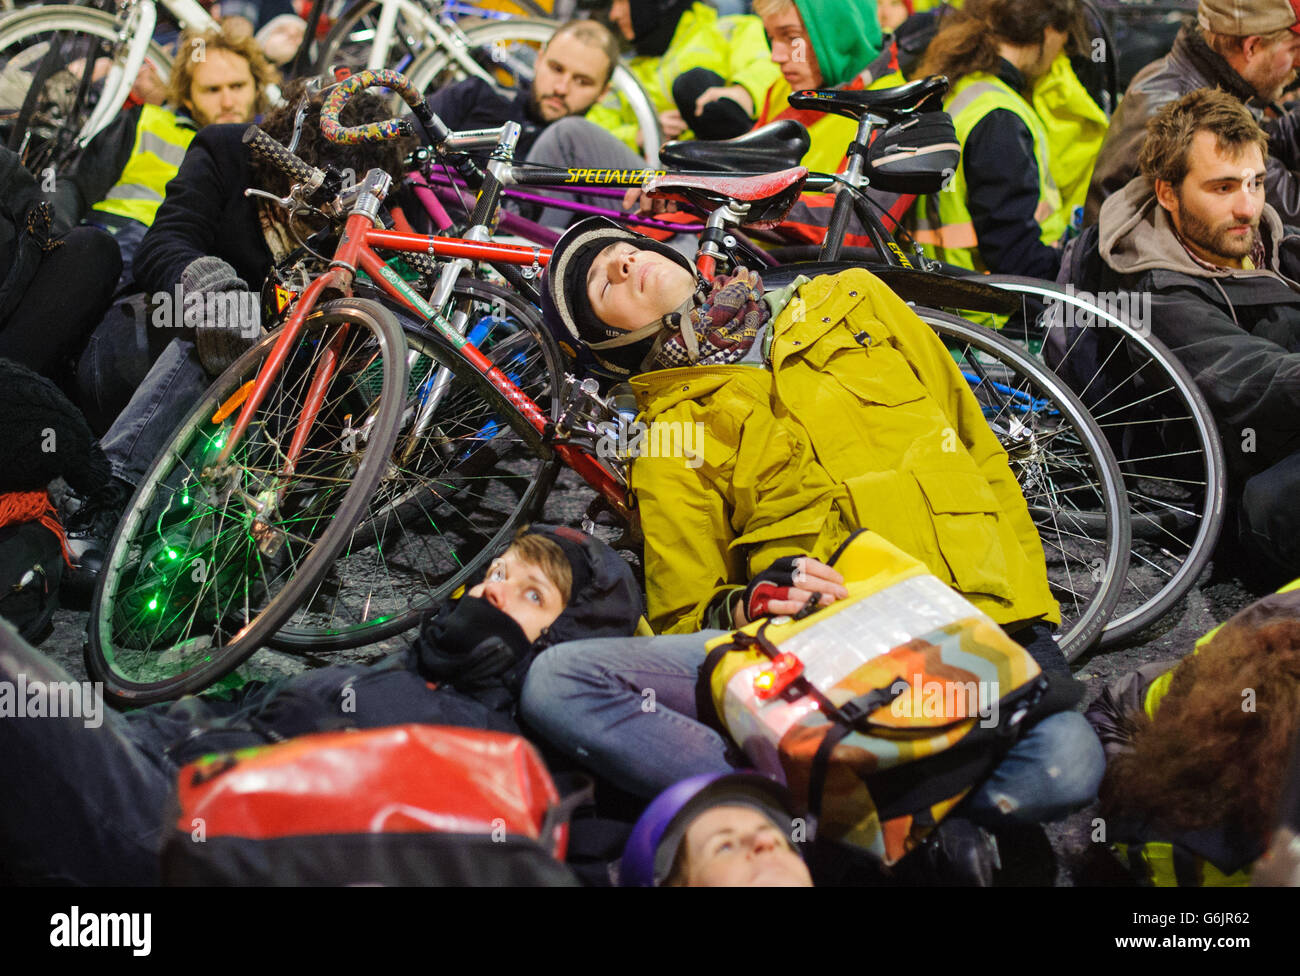 Les cyclistes participent à une manifestation « à l'intérieur » devant le siège de transport pour Londres, à Blackfriars, Londres, appelant à des mesures pour améliorer la sécurité routière des cyclistes. Banque D'Images